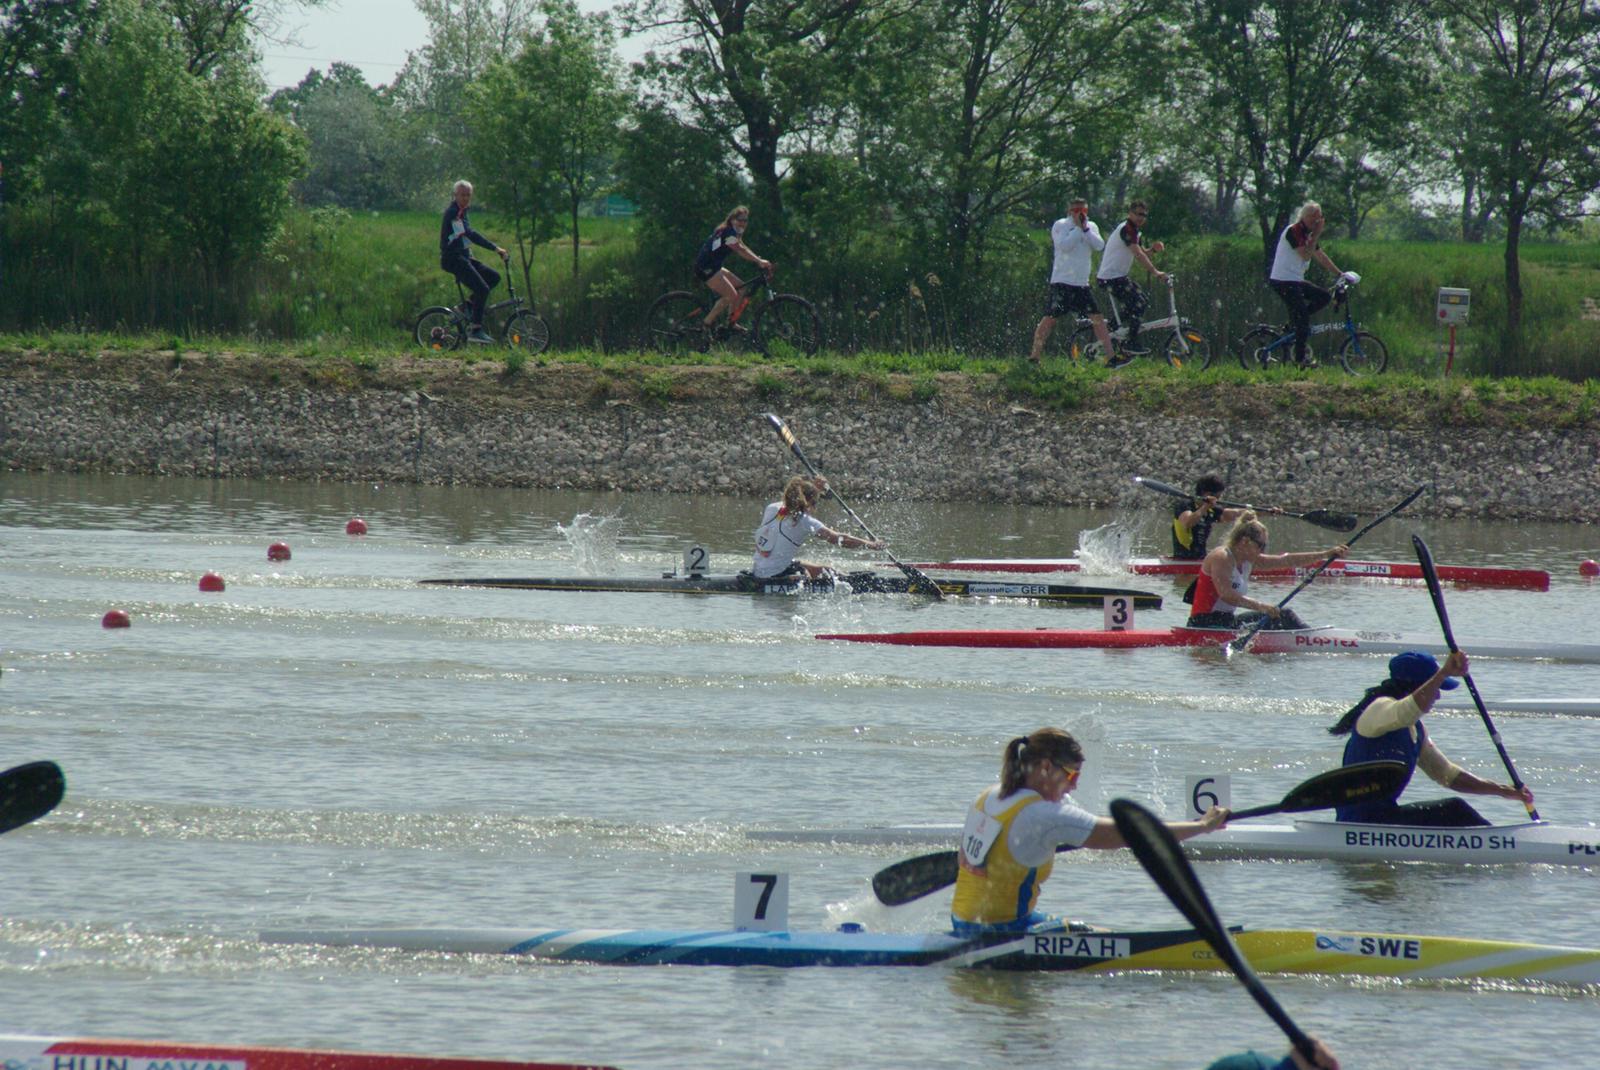 Fünf Kanutinnen im Rennen auf dem Wasser.